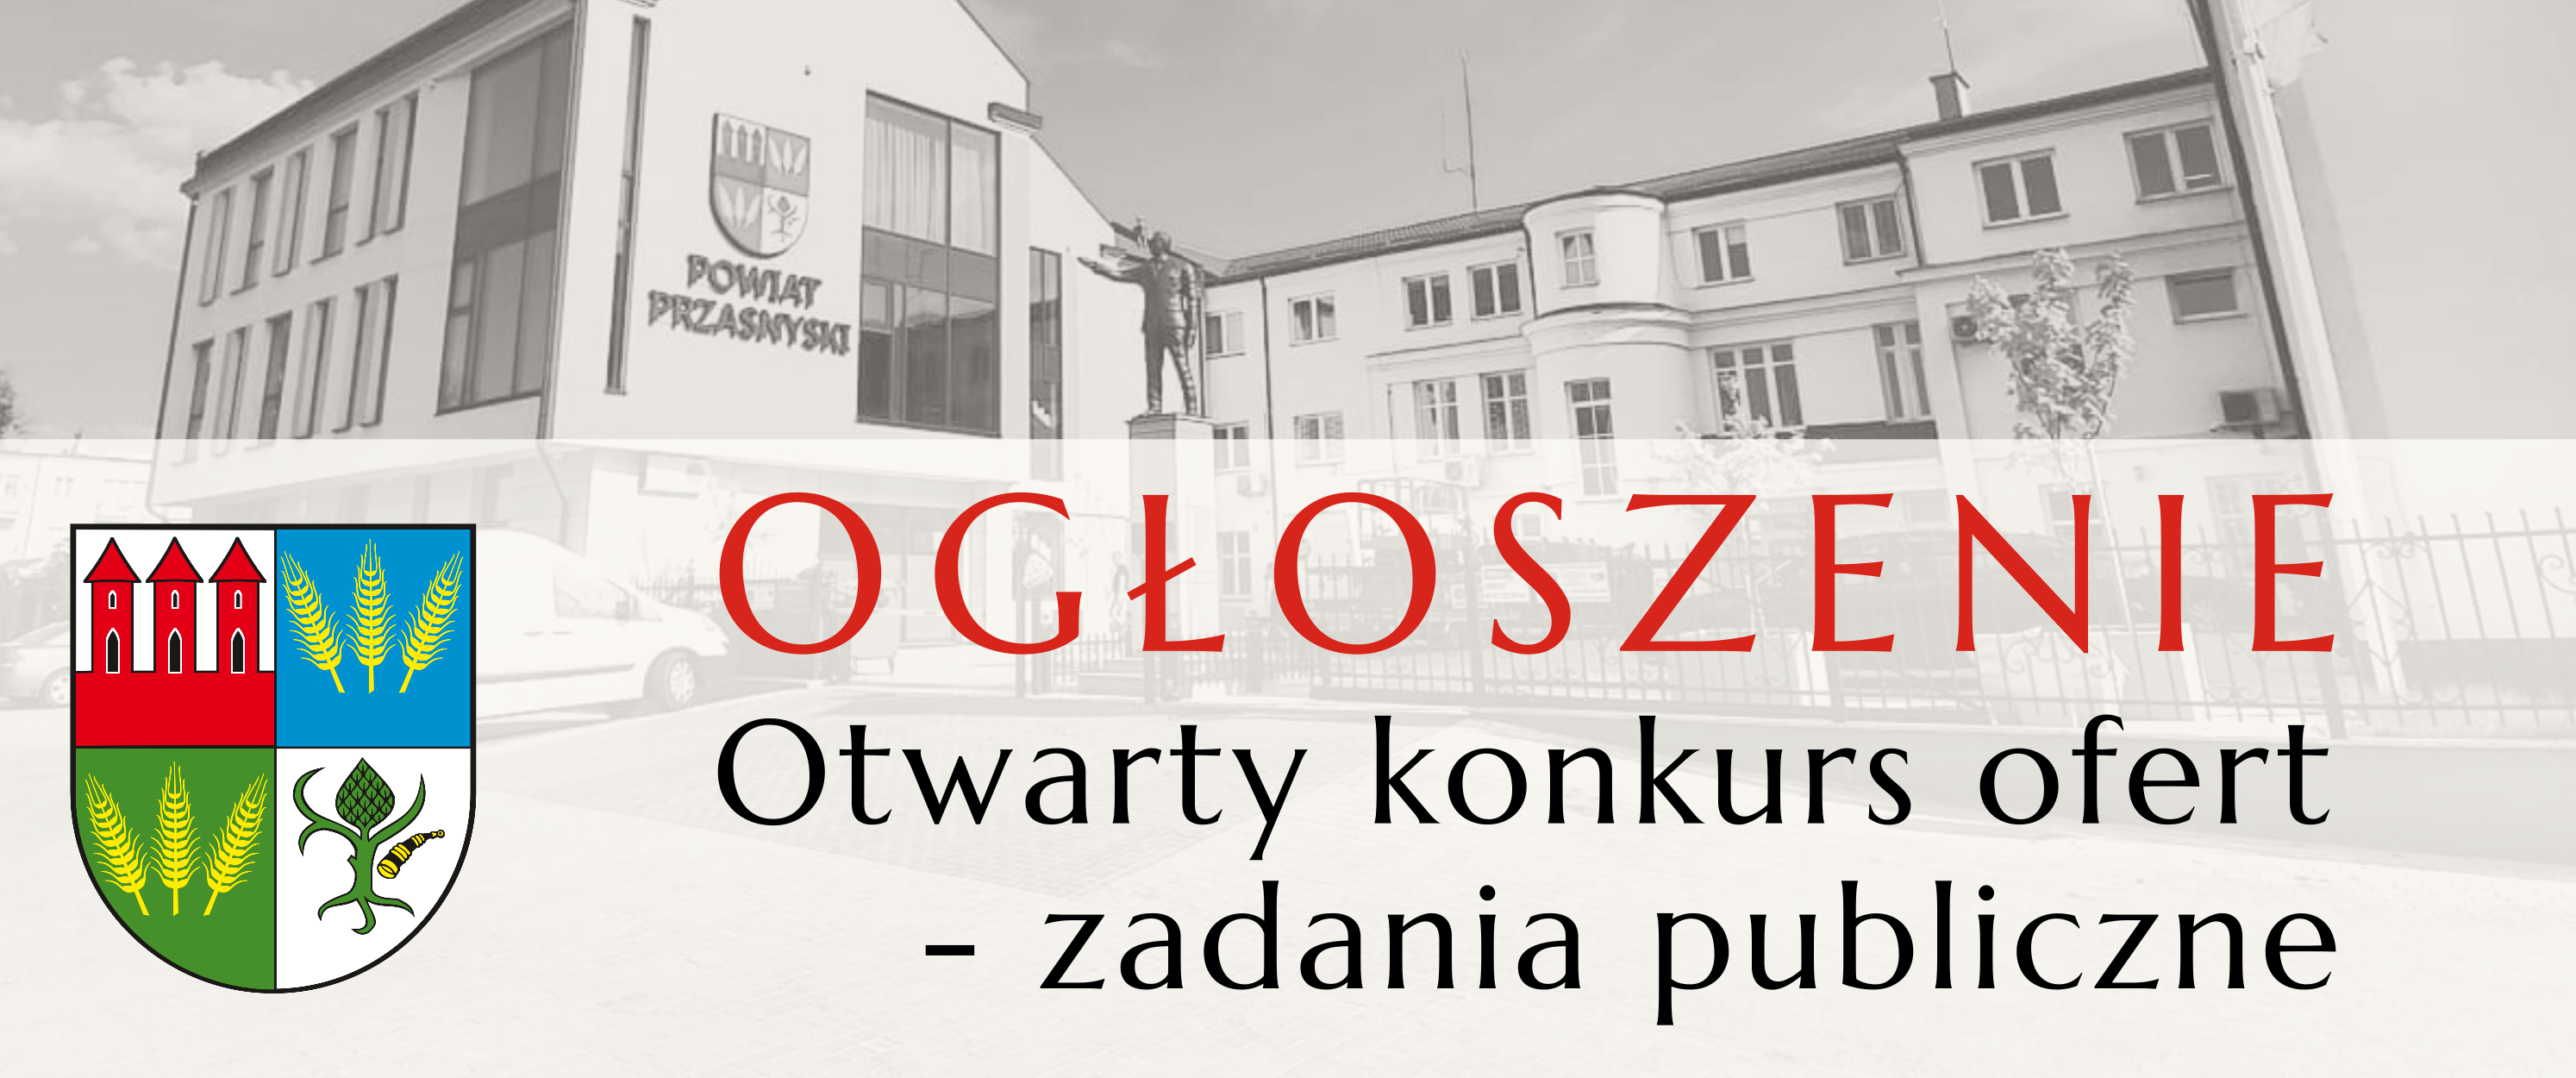 Grafika ogłoszenie z herbem Powiatu Przasnyskiego, konkurs ofert na zadania publiczne.